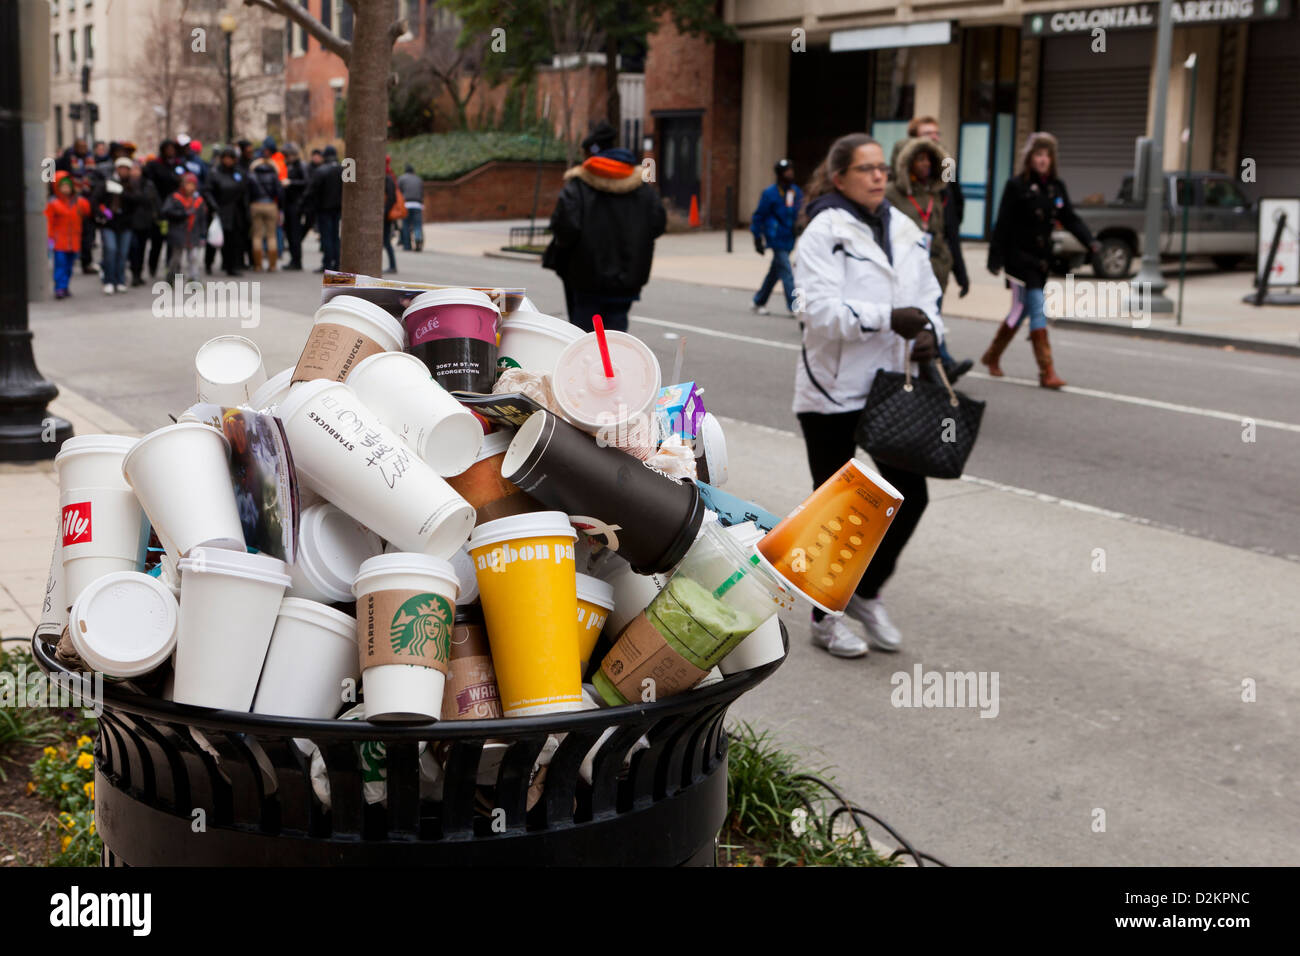 Jeter les gobelets à café déborde d'poubelle publique Photo Stock - Alamy